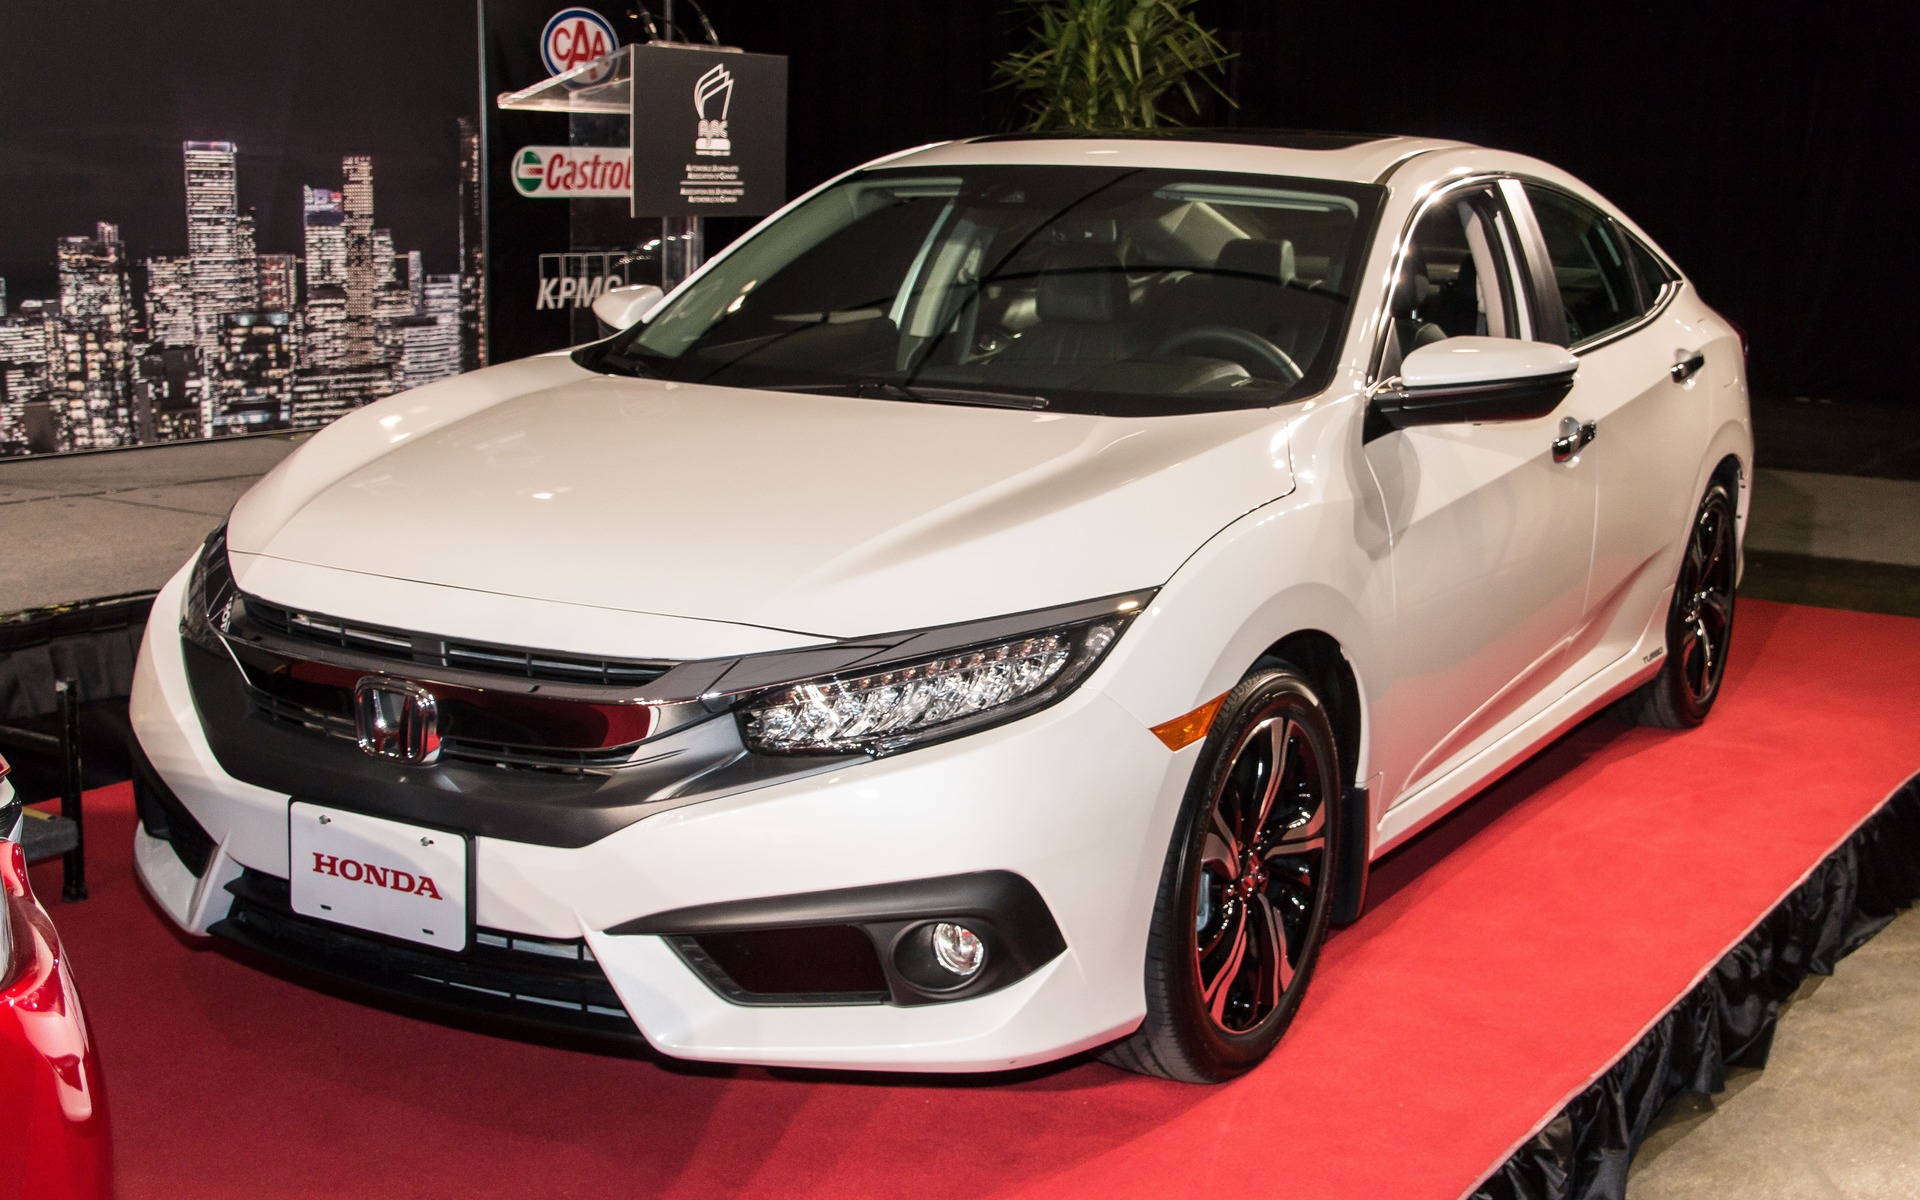 Honda Civic 2016, Voiture canadienne de l'année selon l'AJAC.